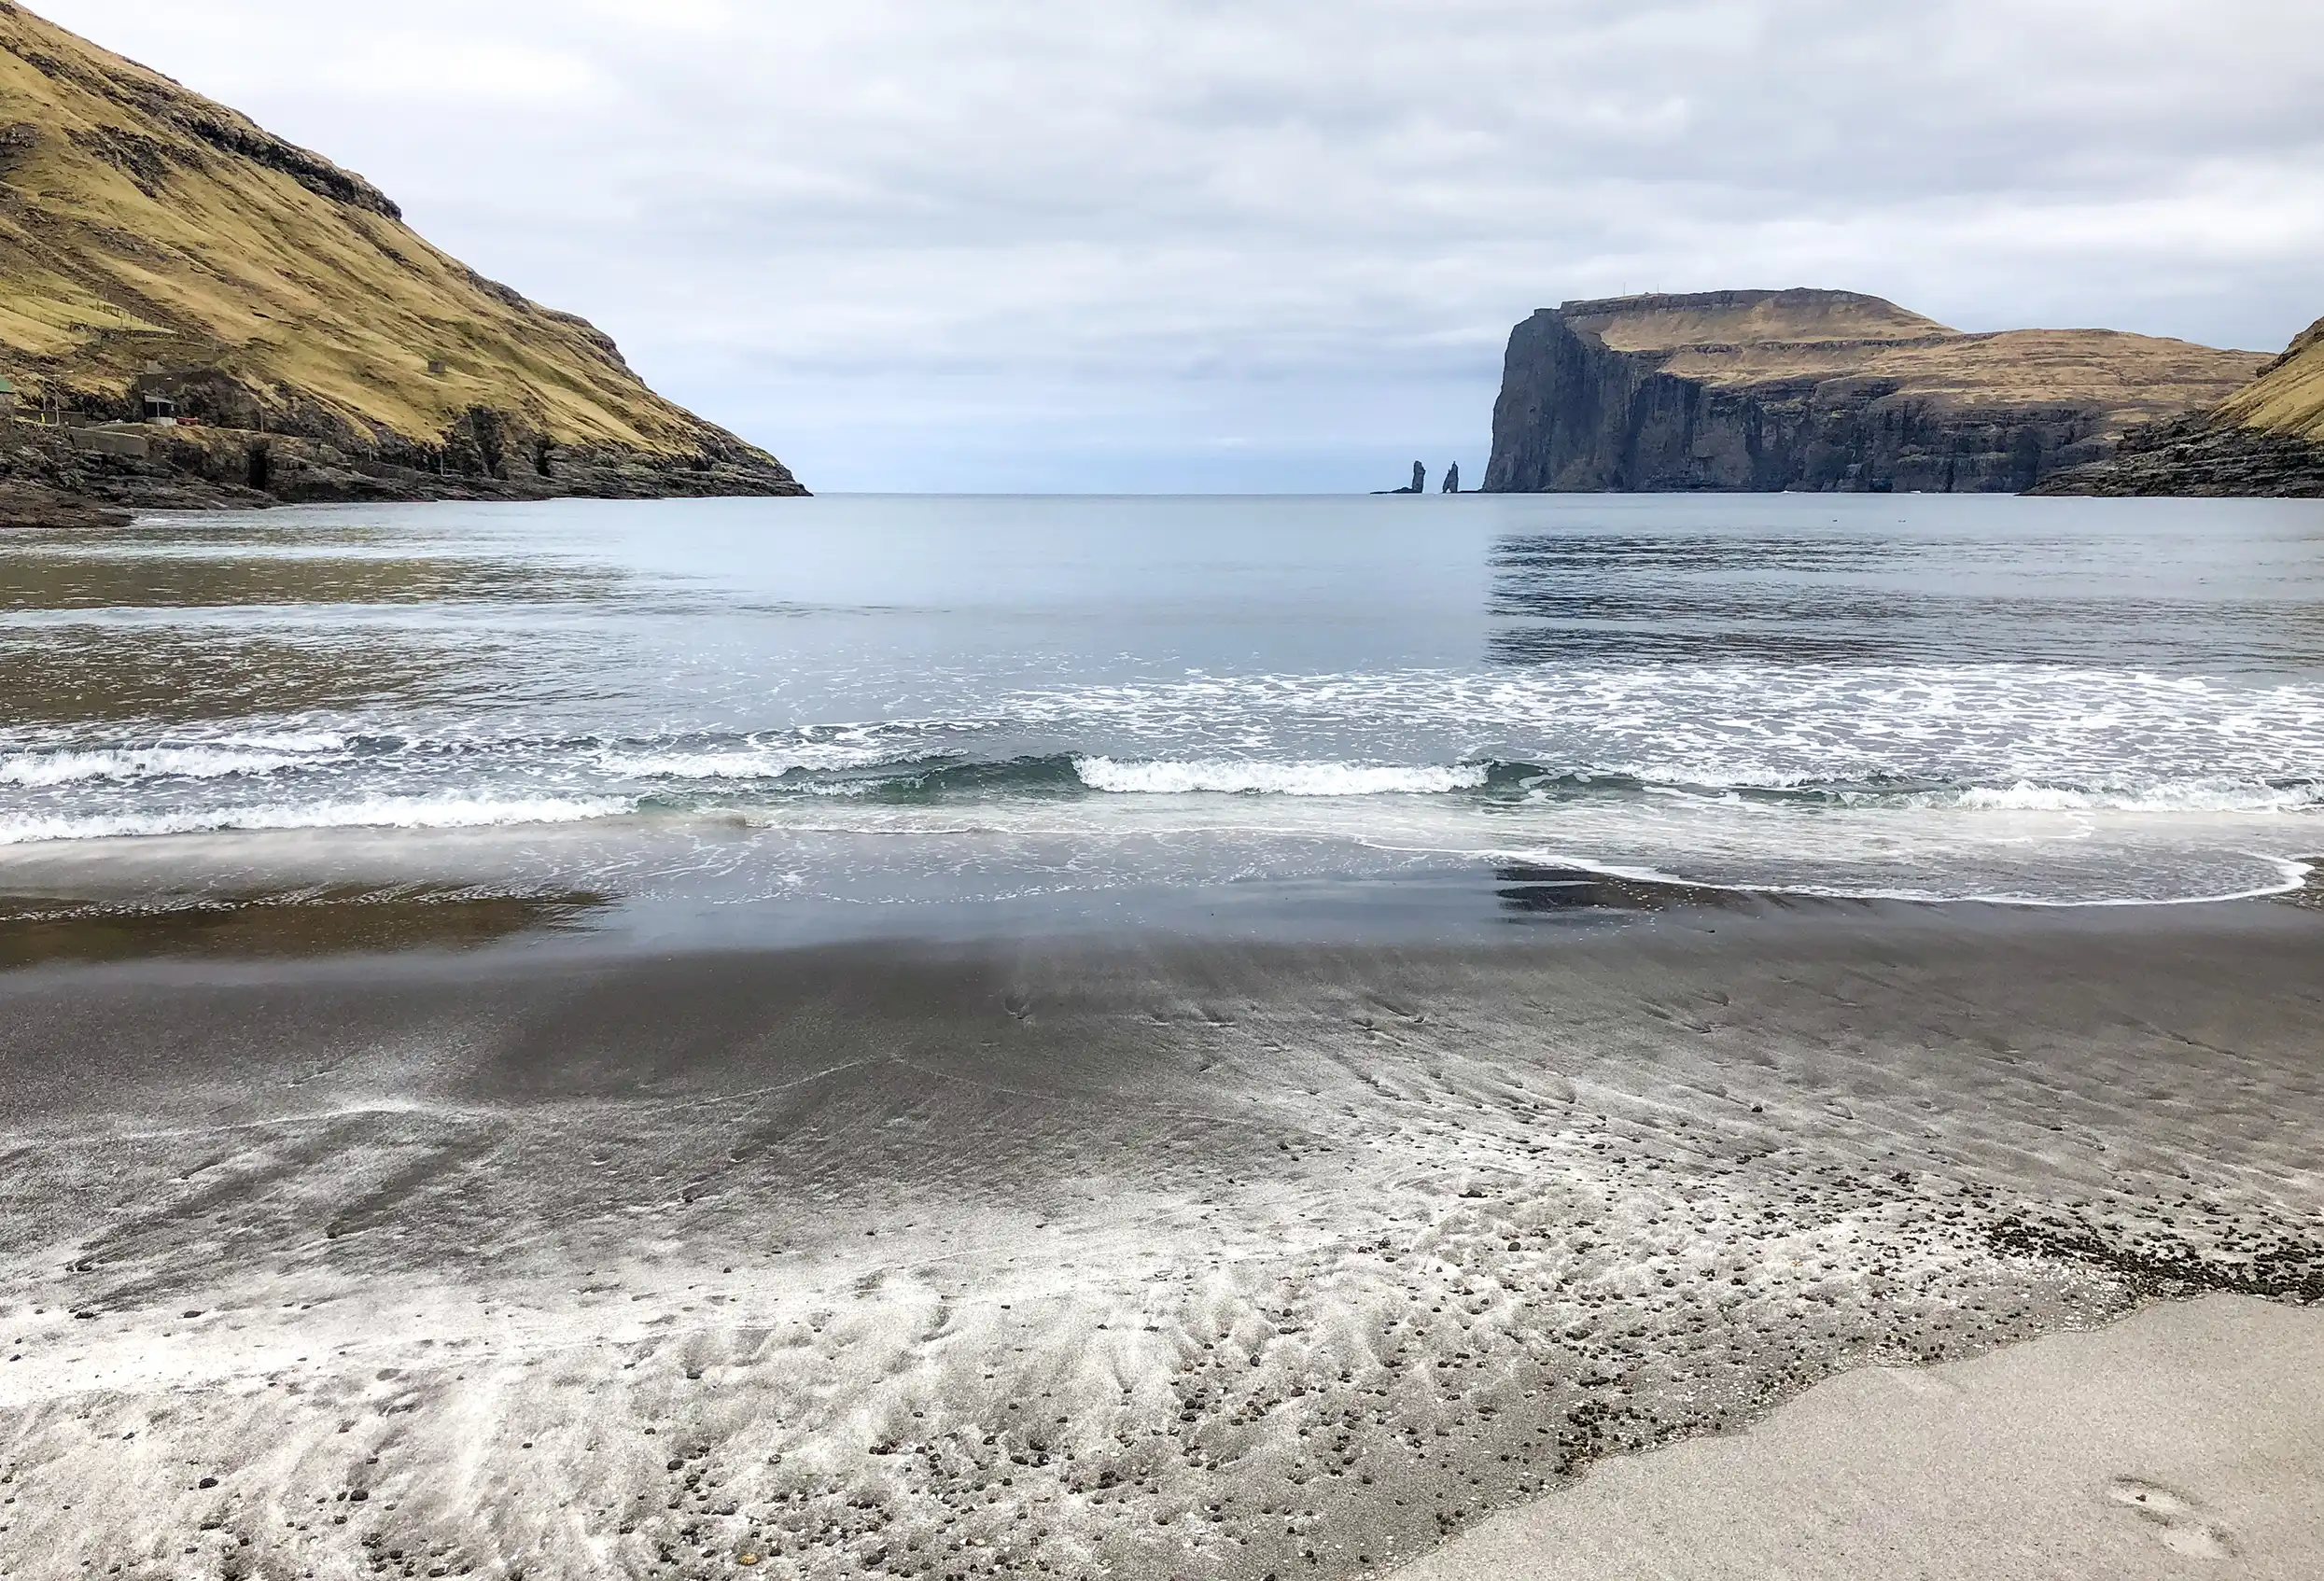 Faeröer eilanden deel 2: de leukste plekjes op het grootste eiland Streymoy